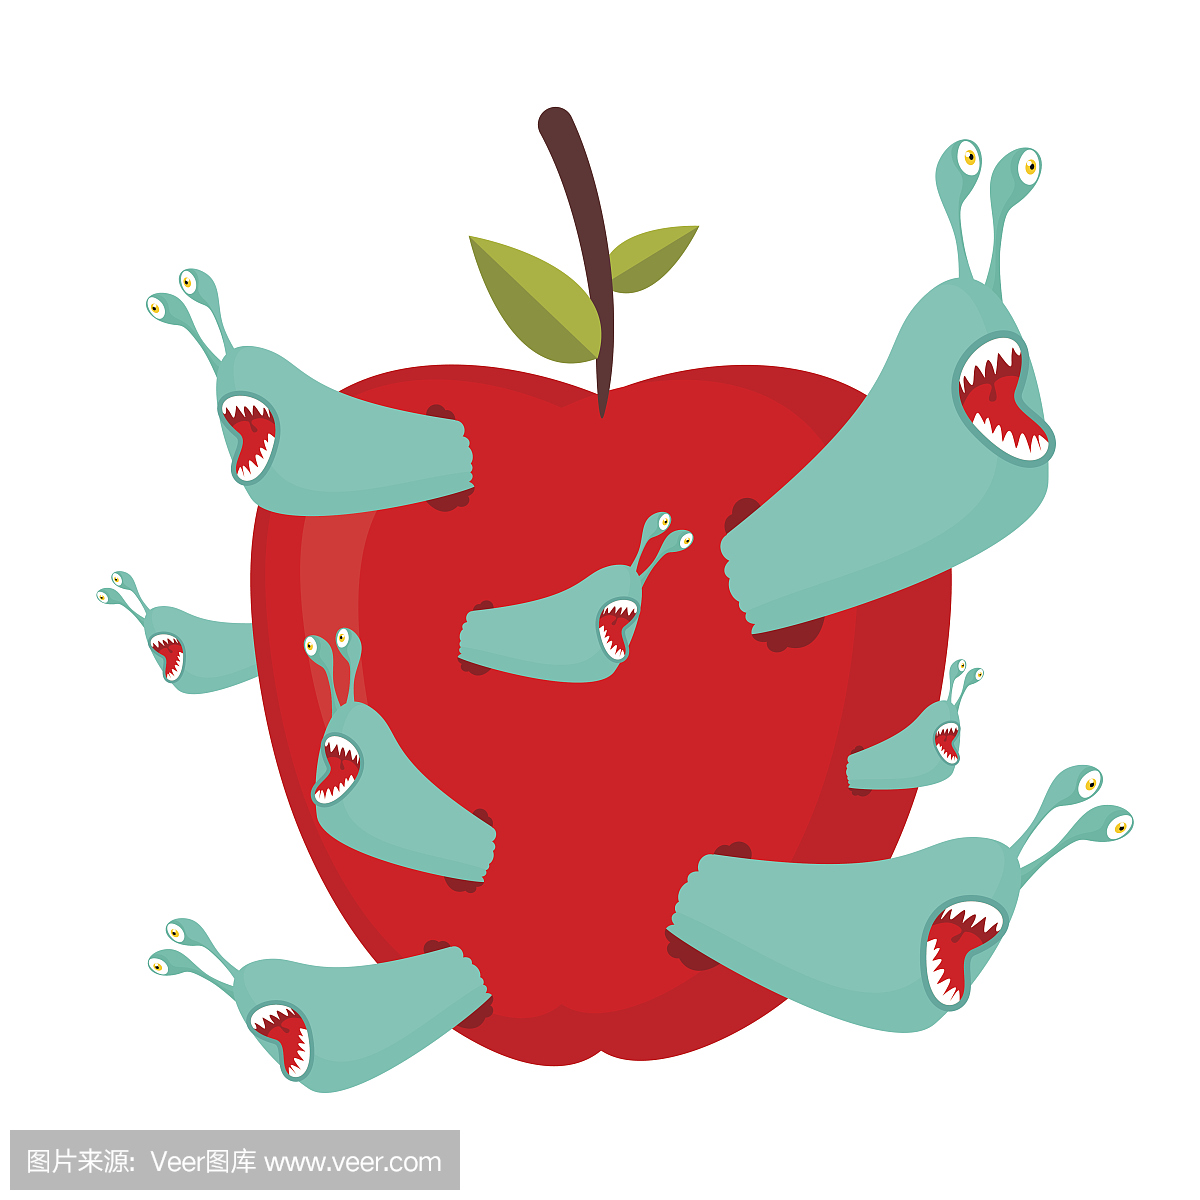 蠕虫吃红苹果。寄生虫水果中的害虫